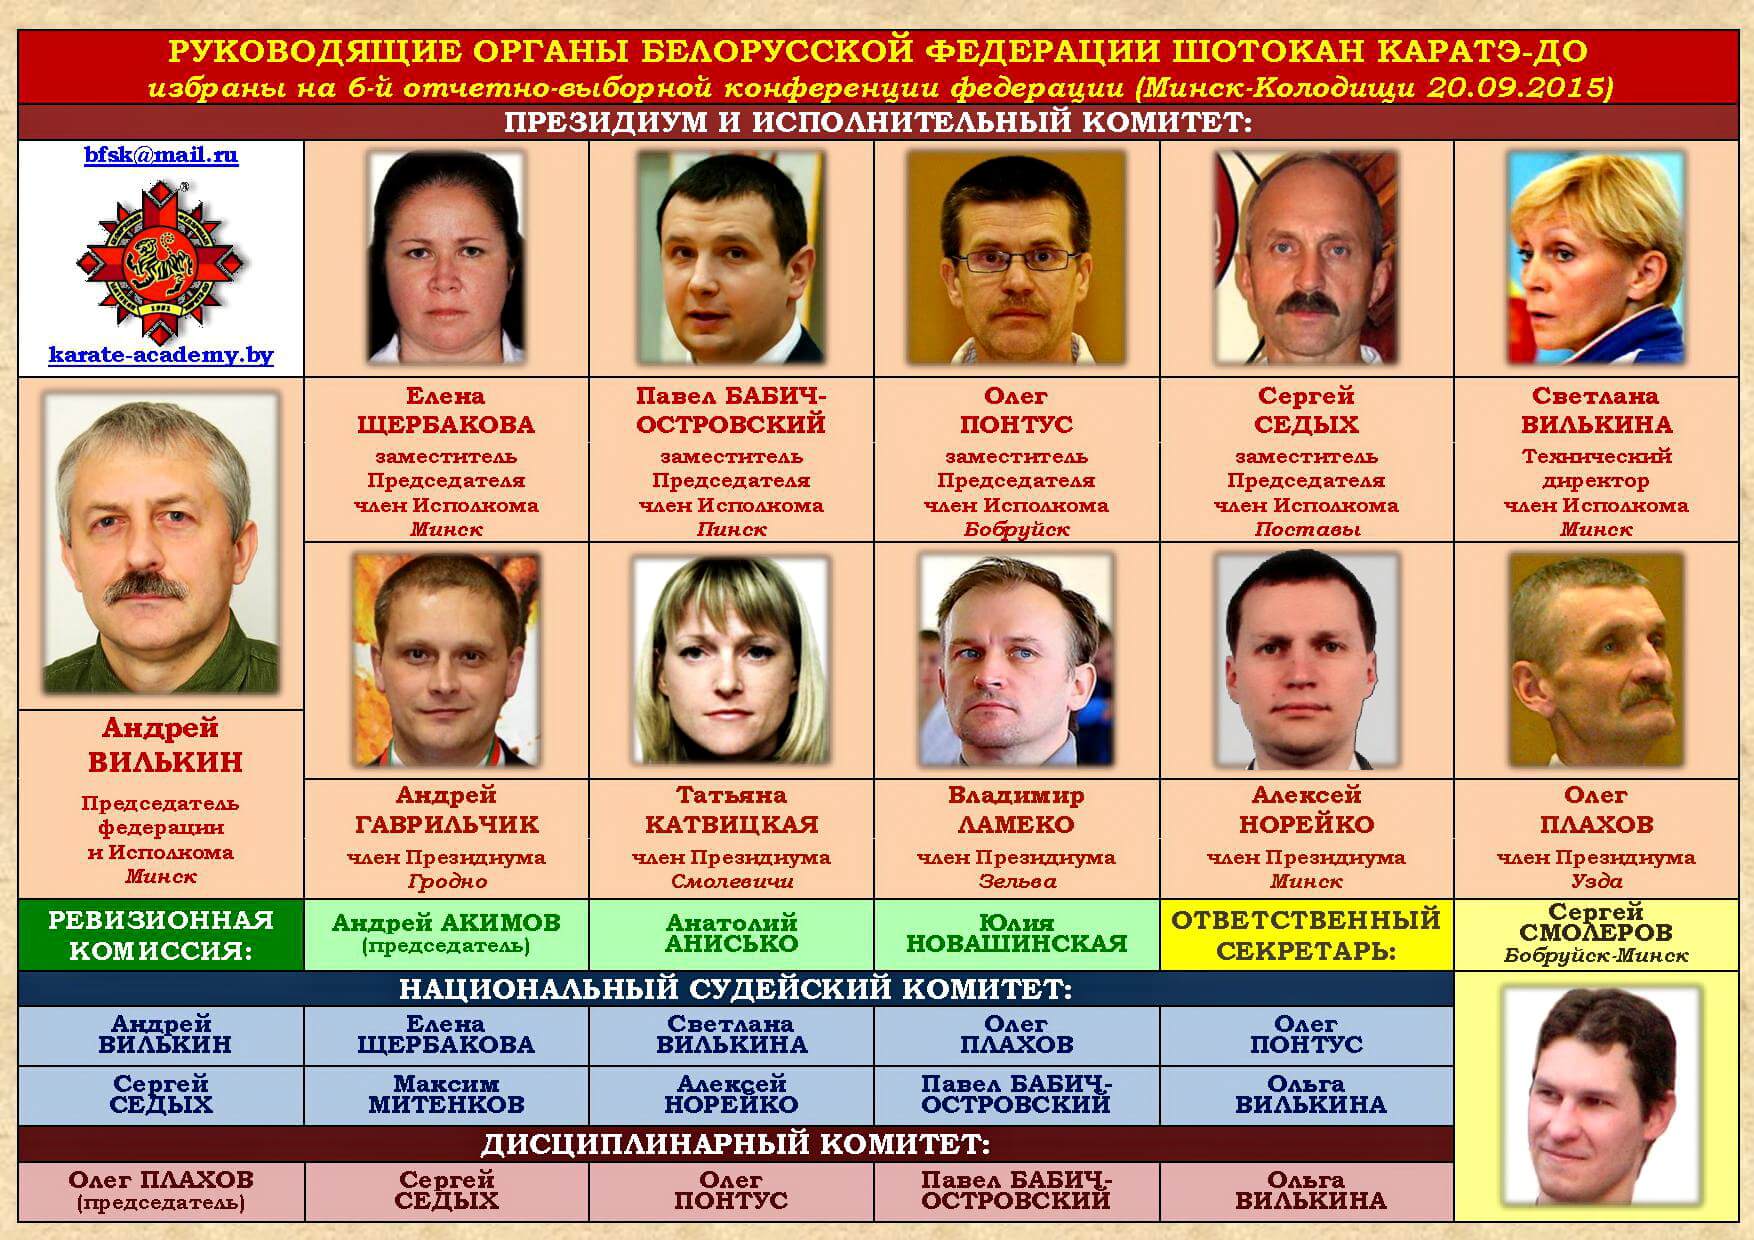 БФШК Руководящие органы 2015-09